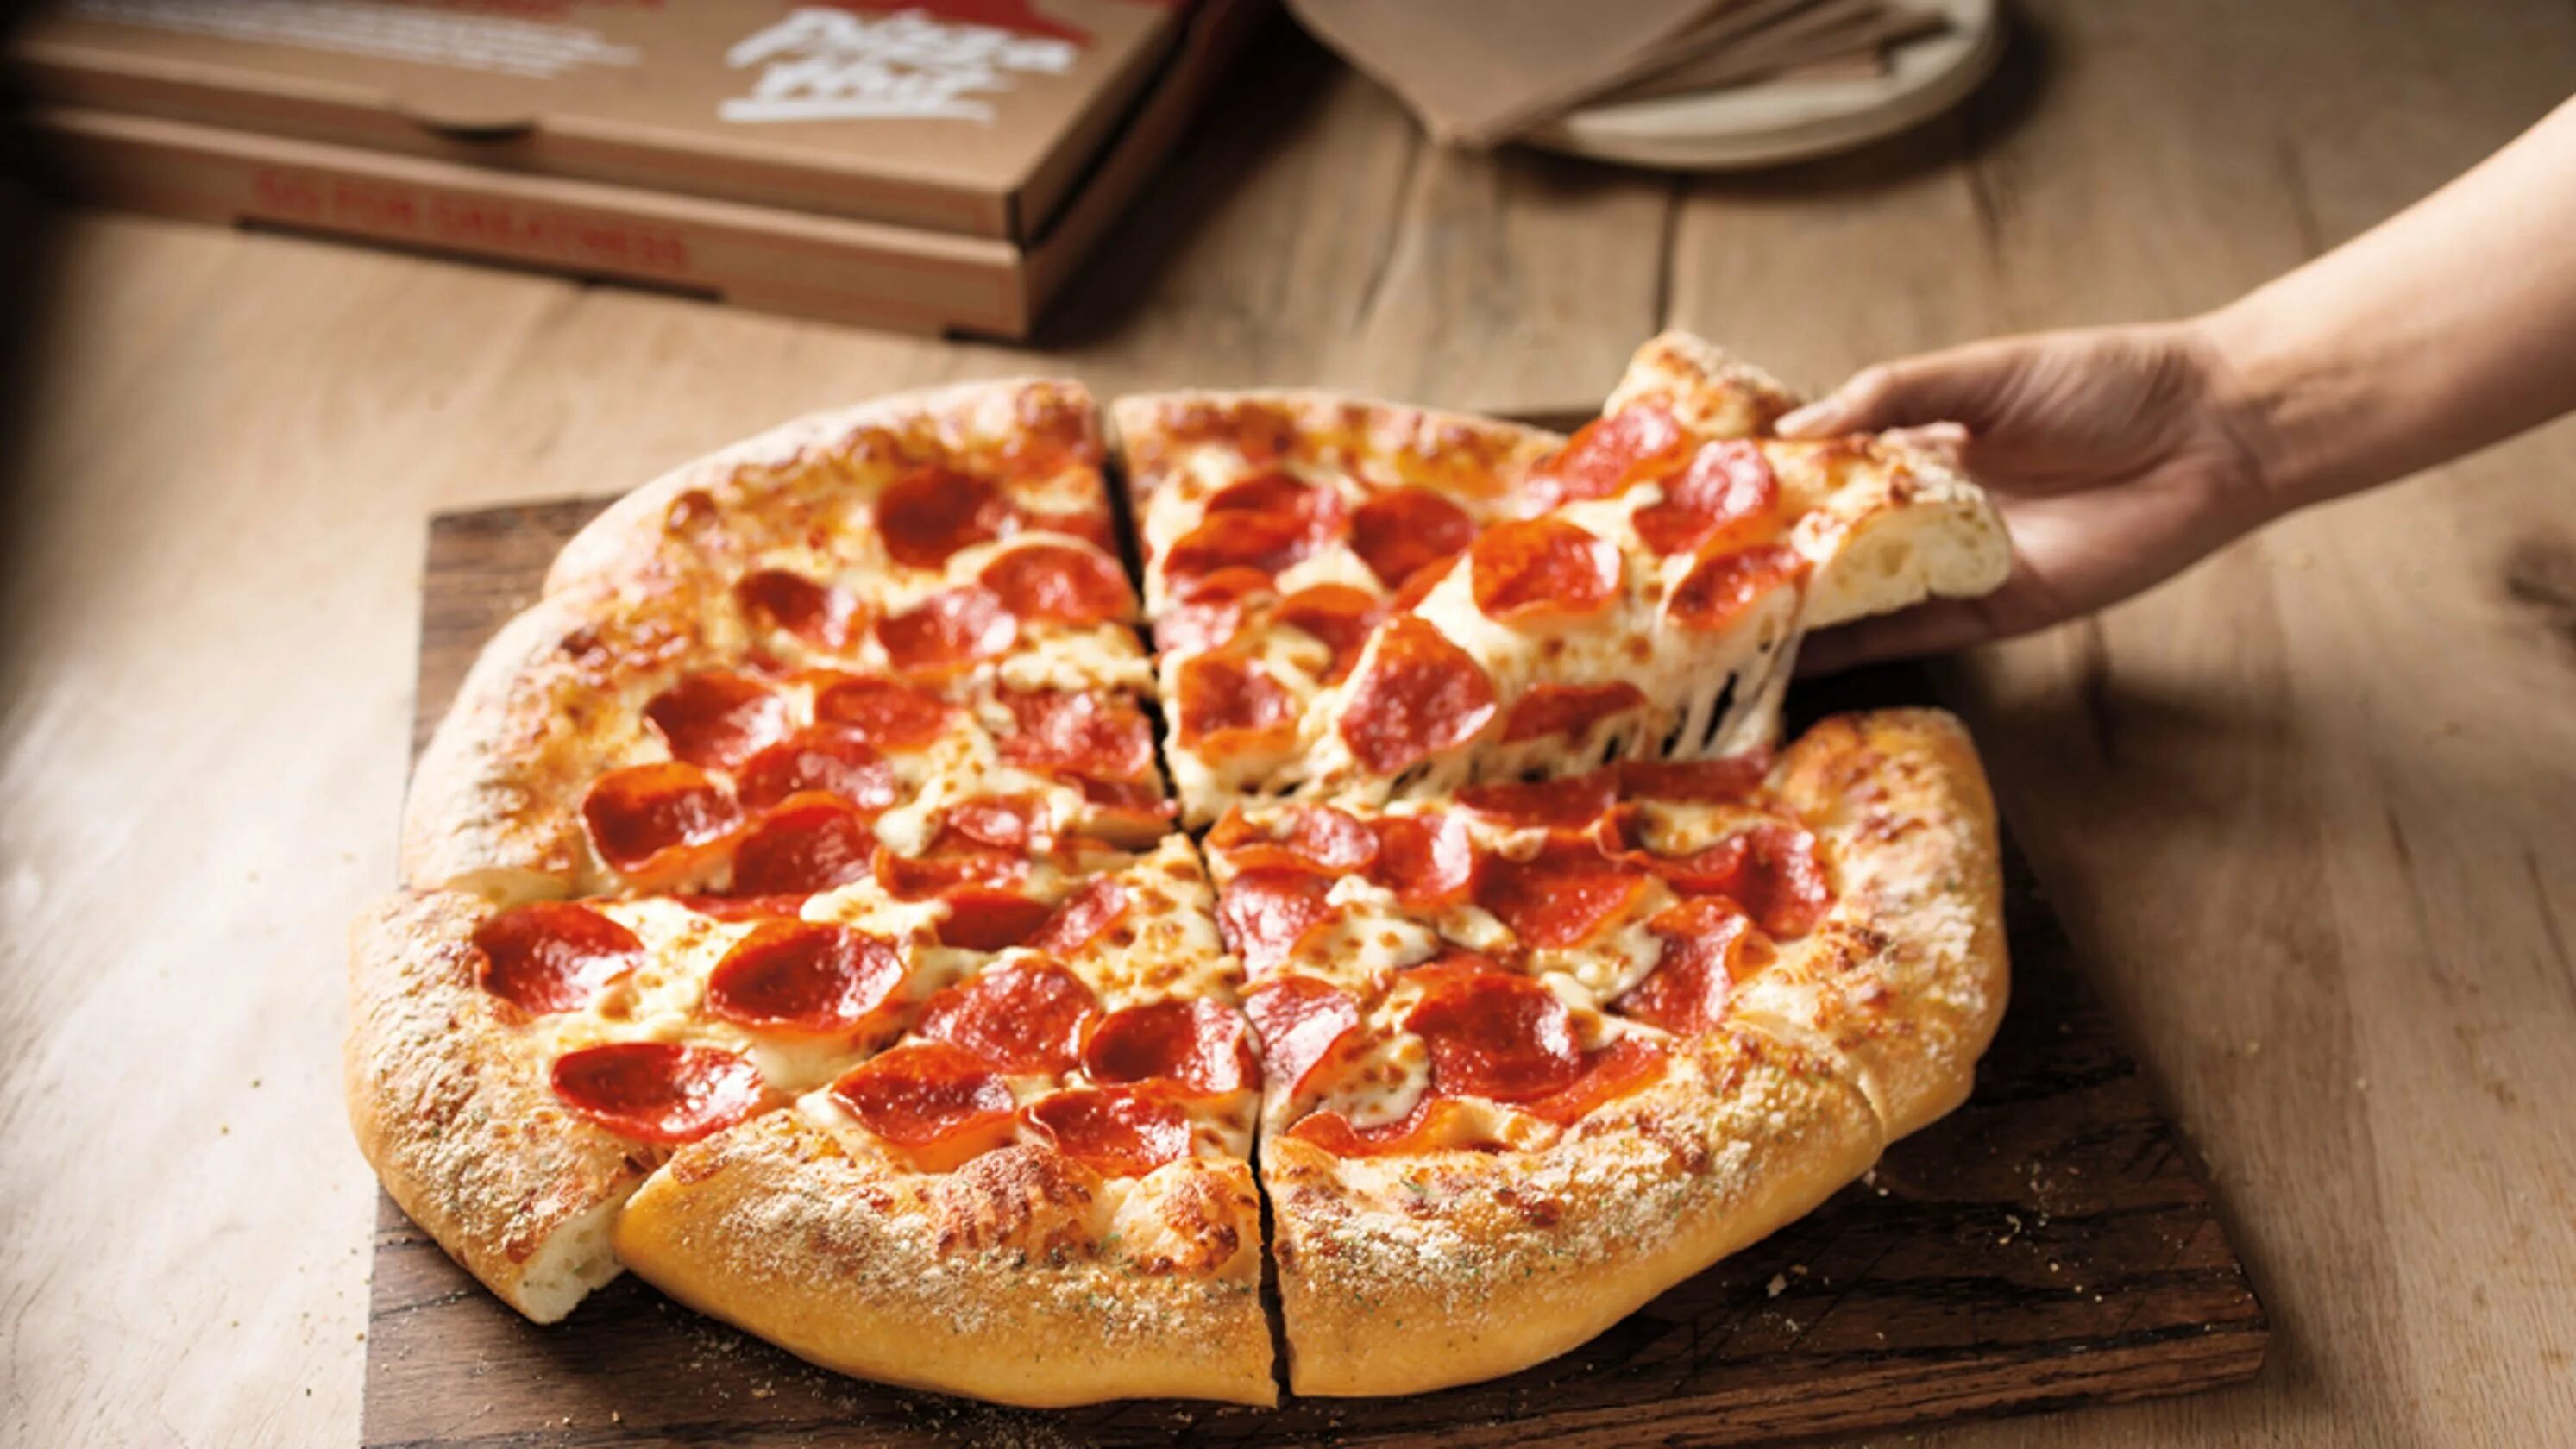 Така пицца. Американская пицца. Пышная пицца. Пицца на пышном тесте. Пицца в Америке.